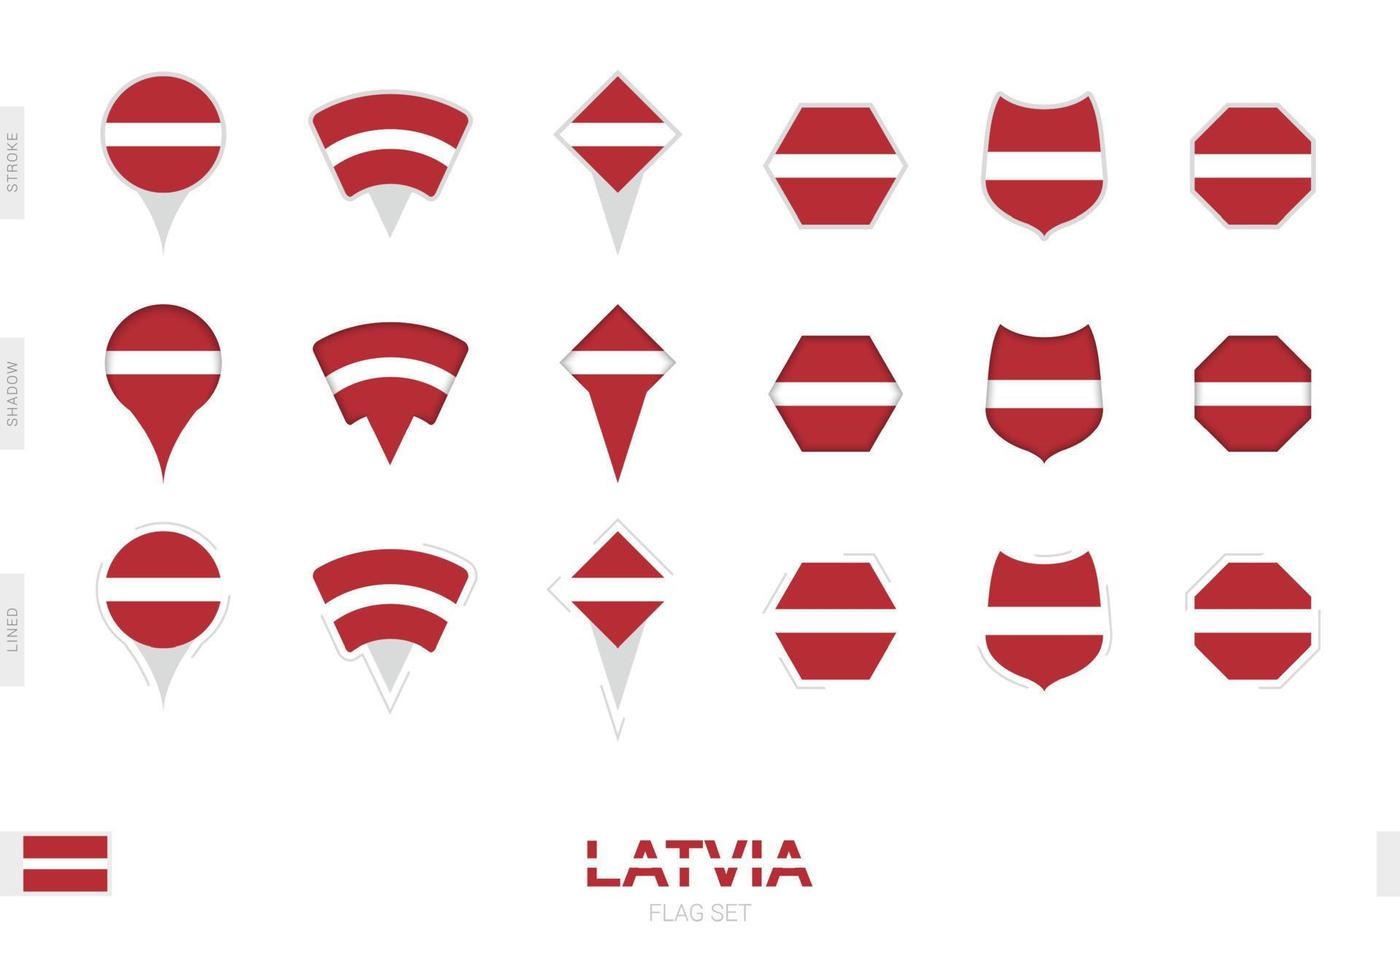 Sammlung der lettischen Flagge in verschiedenen Formen und mit drei verschiedenen Effekten. vektor